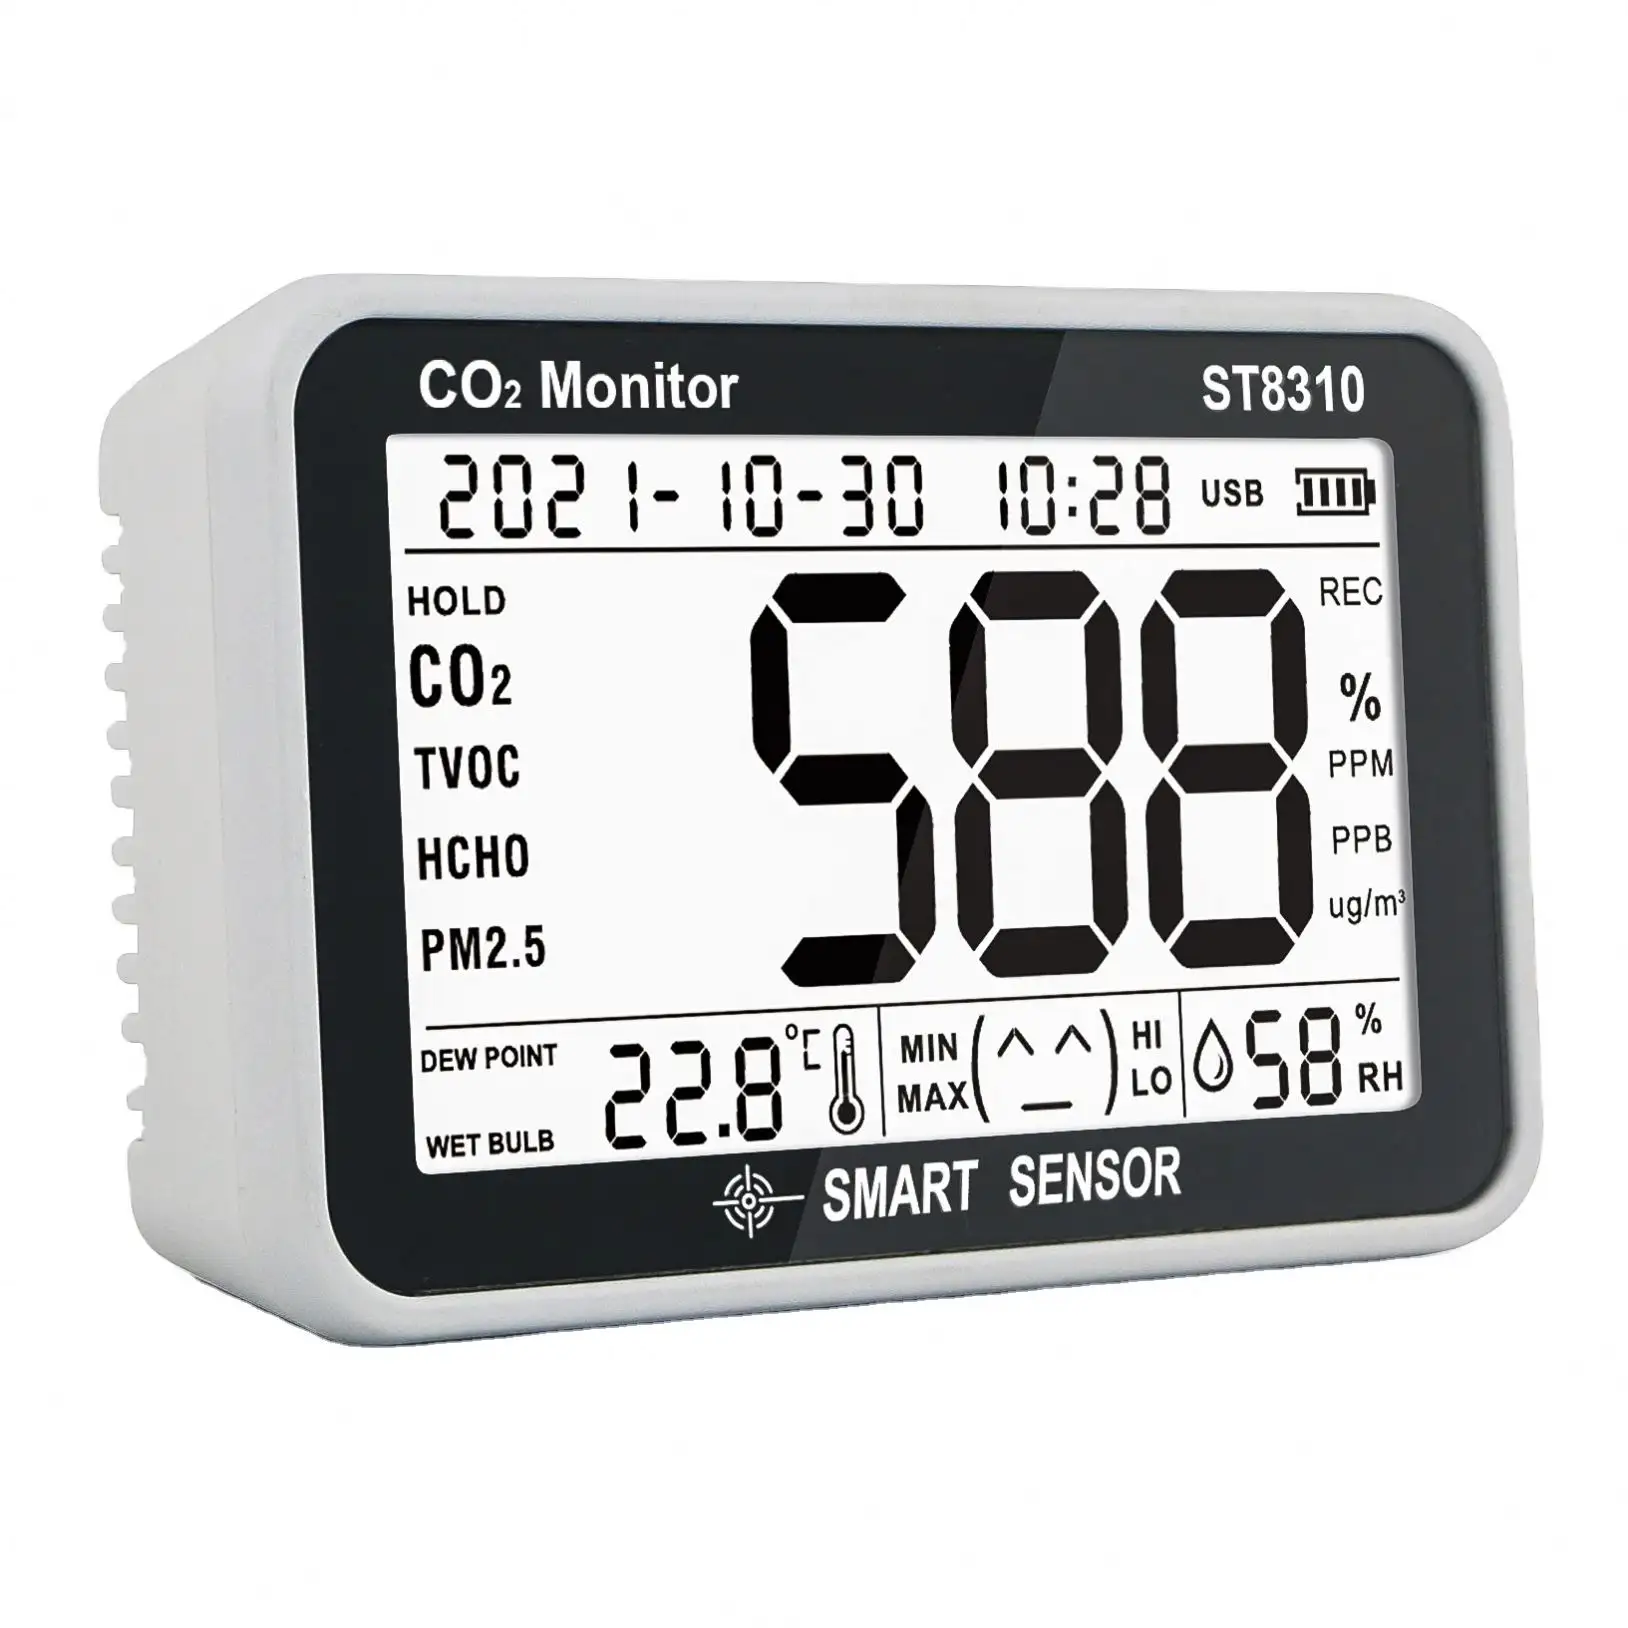 Sensor inteligente analisador gás monitor CO2 temperatura umidade testador dados monitor qualidade ar